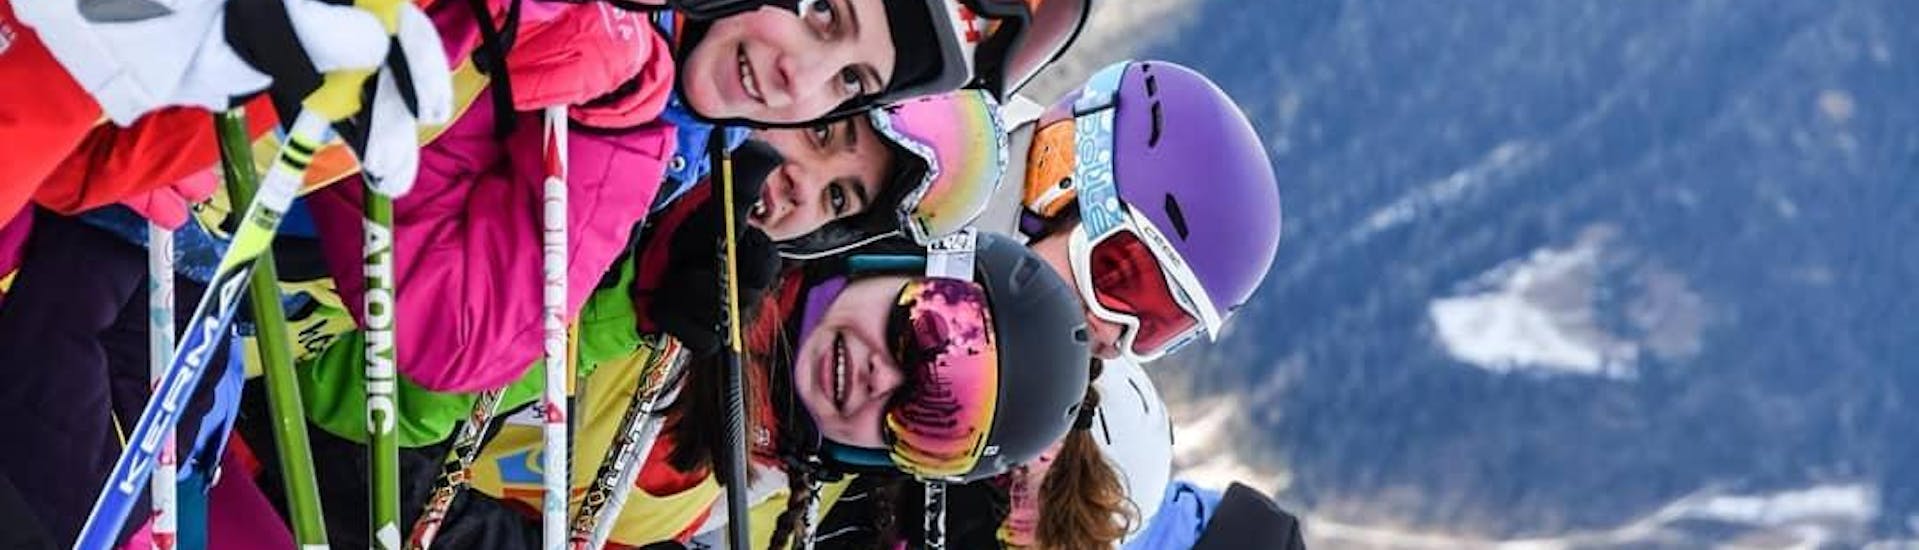 Cours de ski Enfants dès 4 ans - Expérimentés.